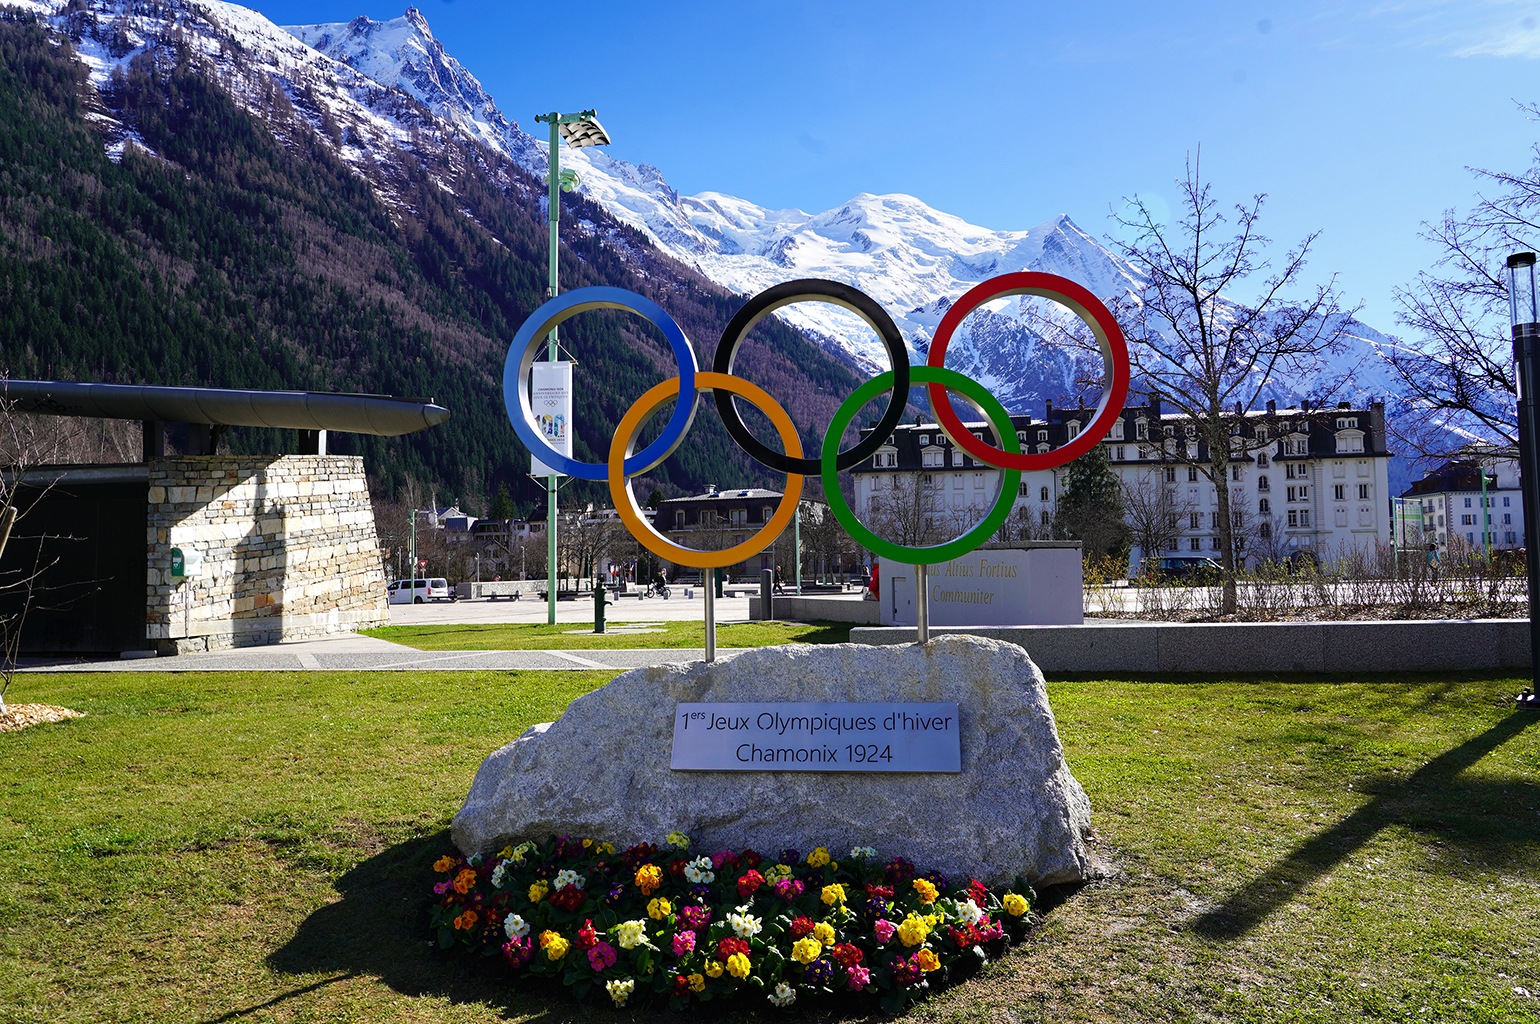 Célébration du centenaire des 1ers Jeux Olympiques d'hiver : Chamonix 1924